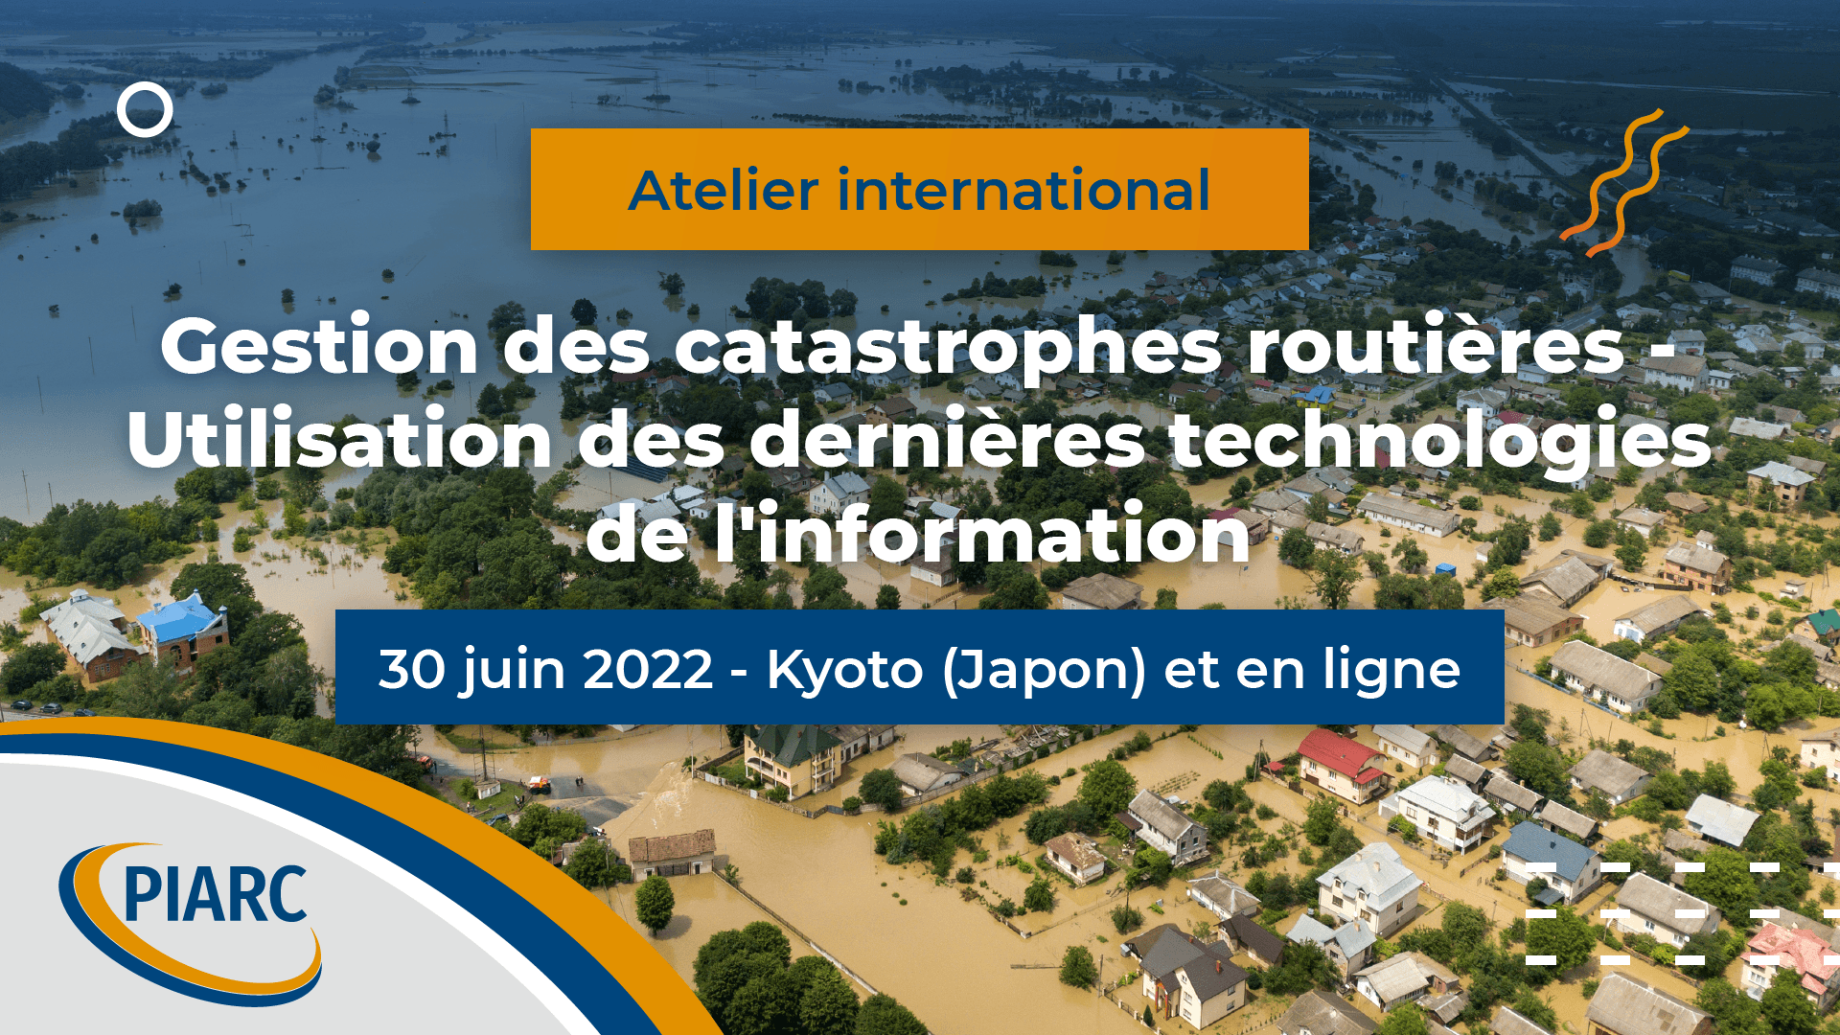 Atelier-international-Gestion-des-Catastrophes-Kyoto-30-juin-PIARC-2022